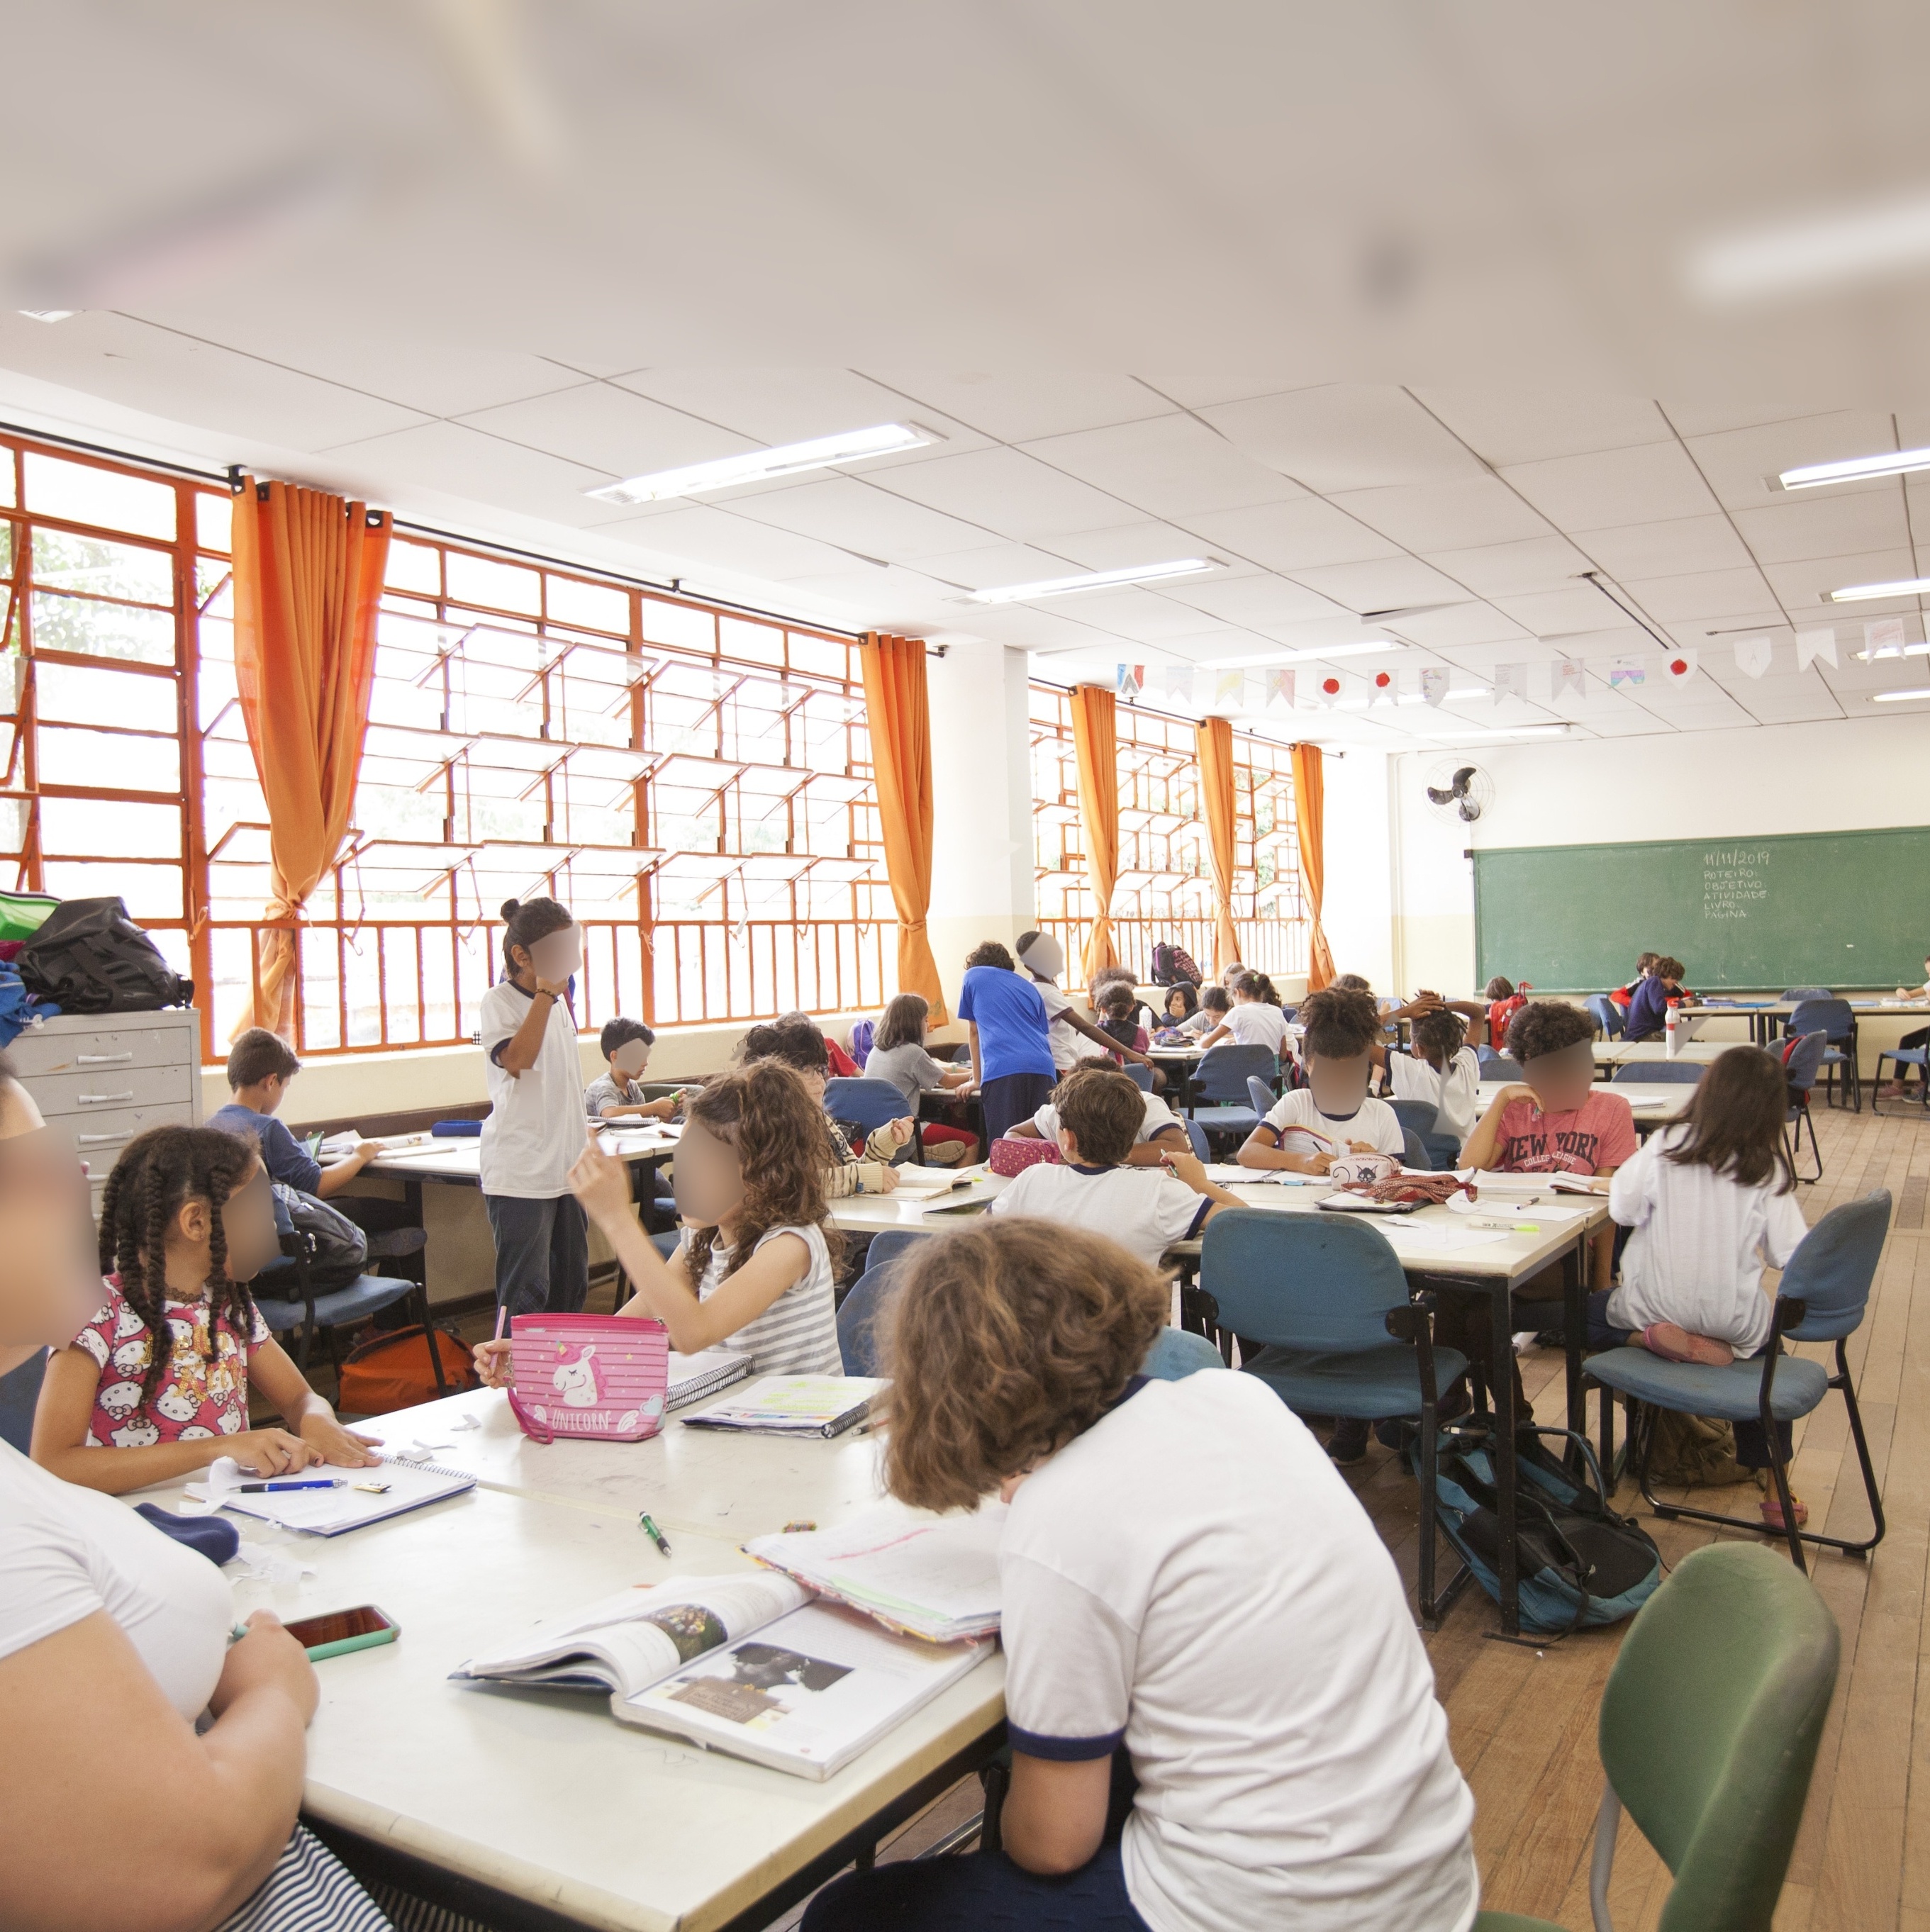 Em sala de aula, estudantes participam de um bate-papo em inglês